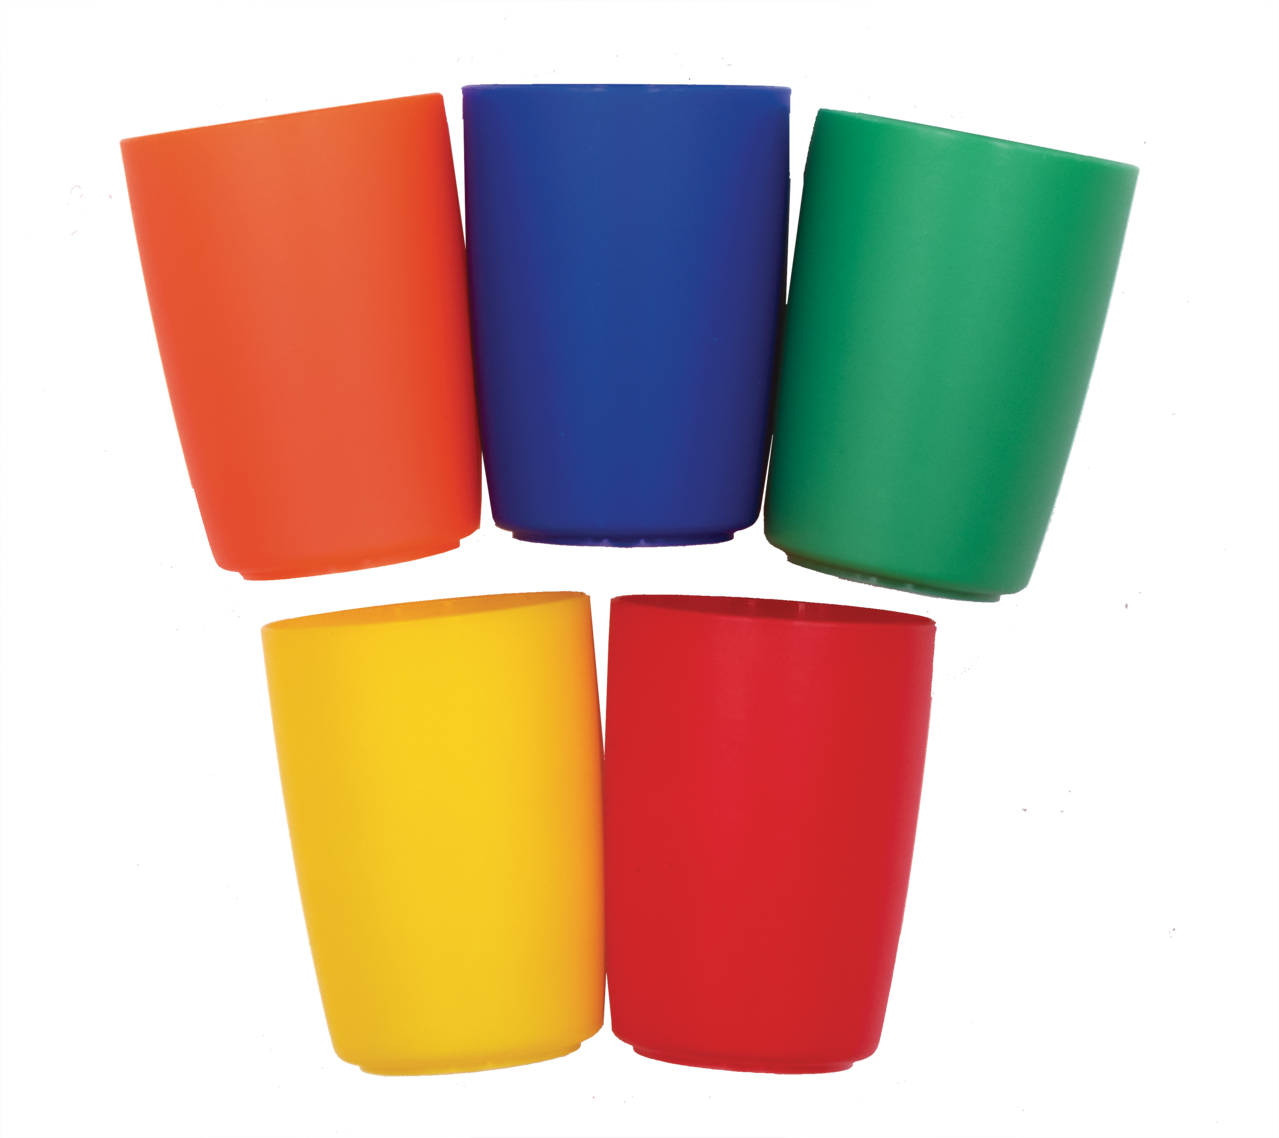 “Gekleurde plastic bekerset” - leermiddelen voor het onderwijs